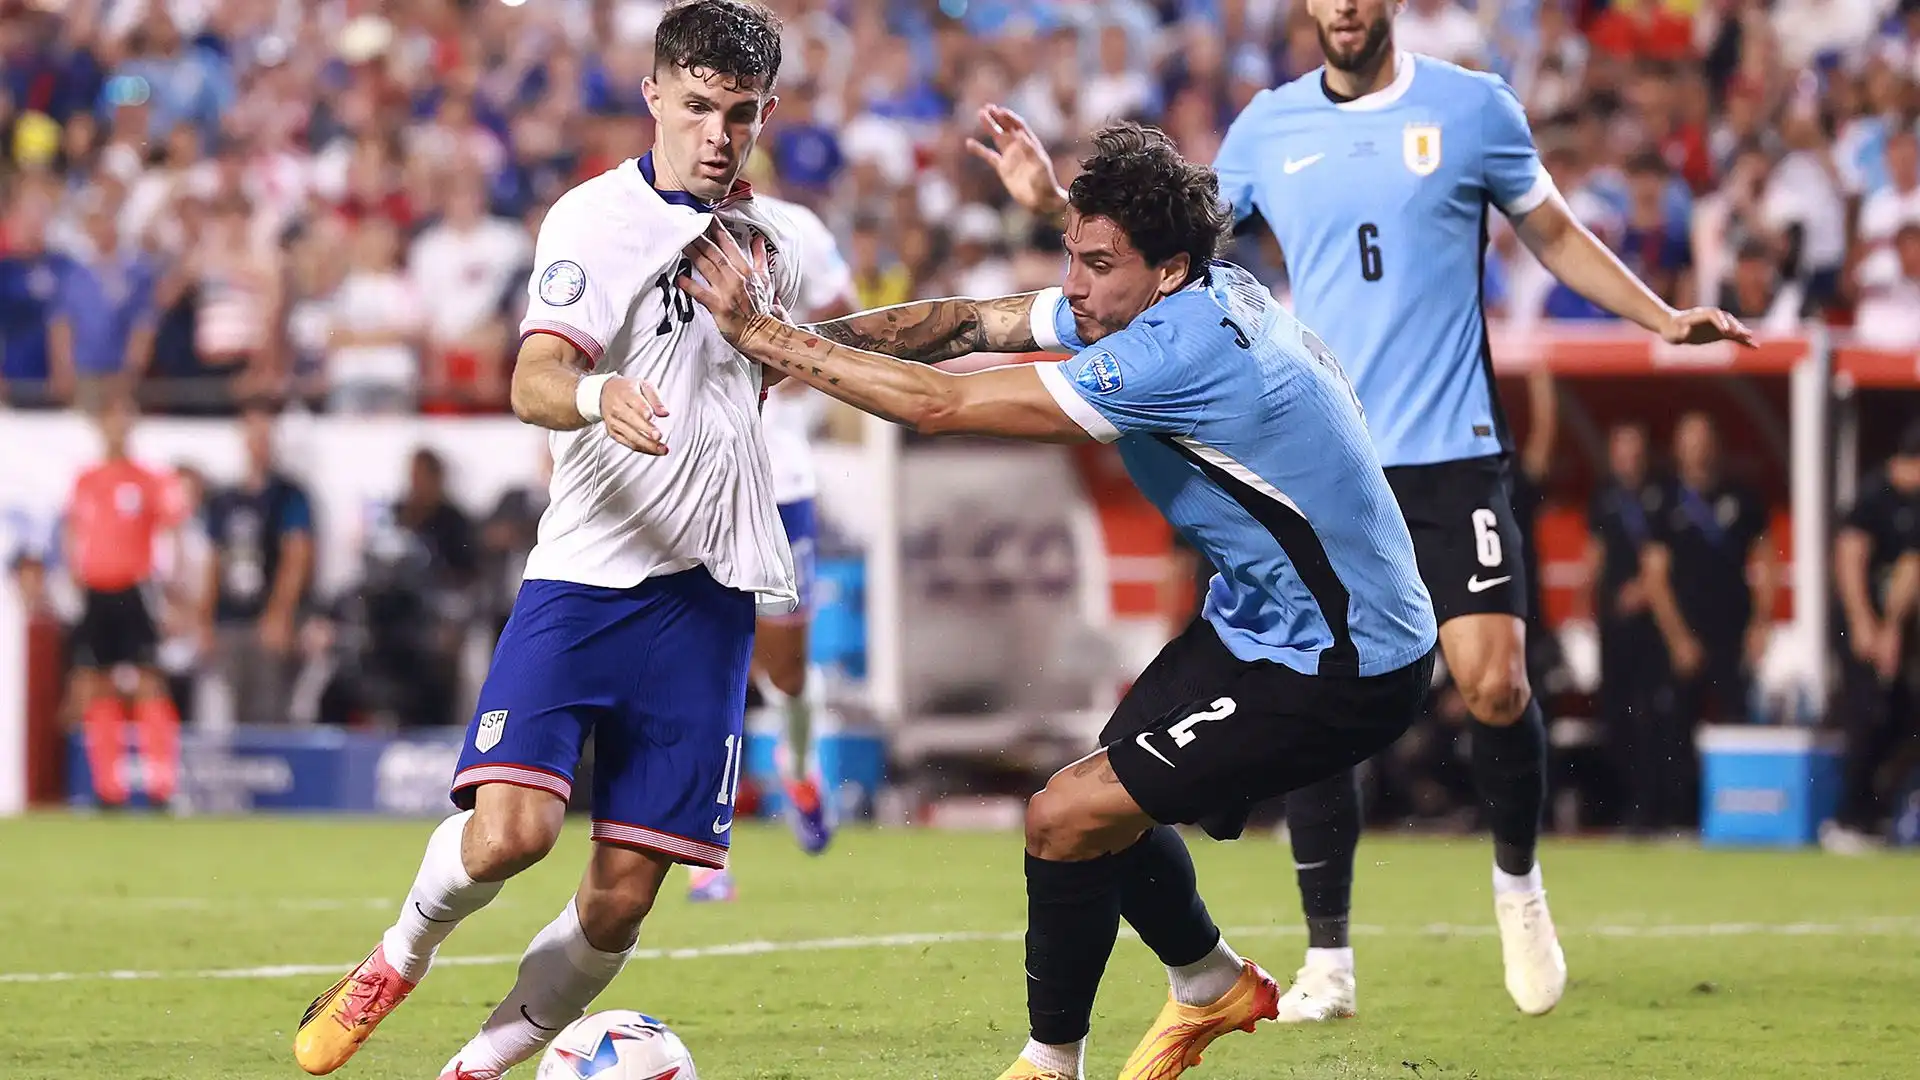 L'Uruguay ha vinto per 1-0 grazie al gol di Olivera e si è qualificato ai quarti di finale